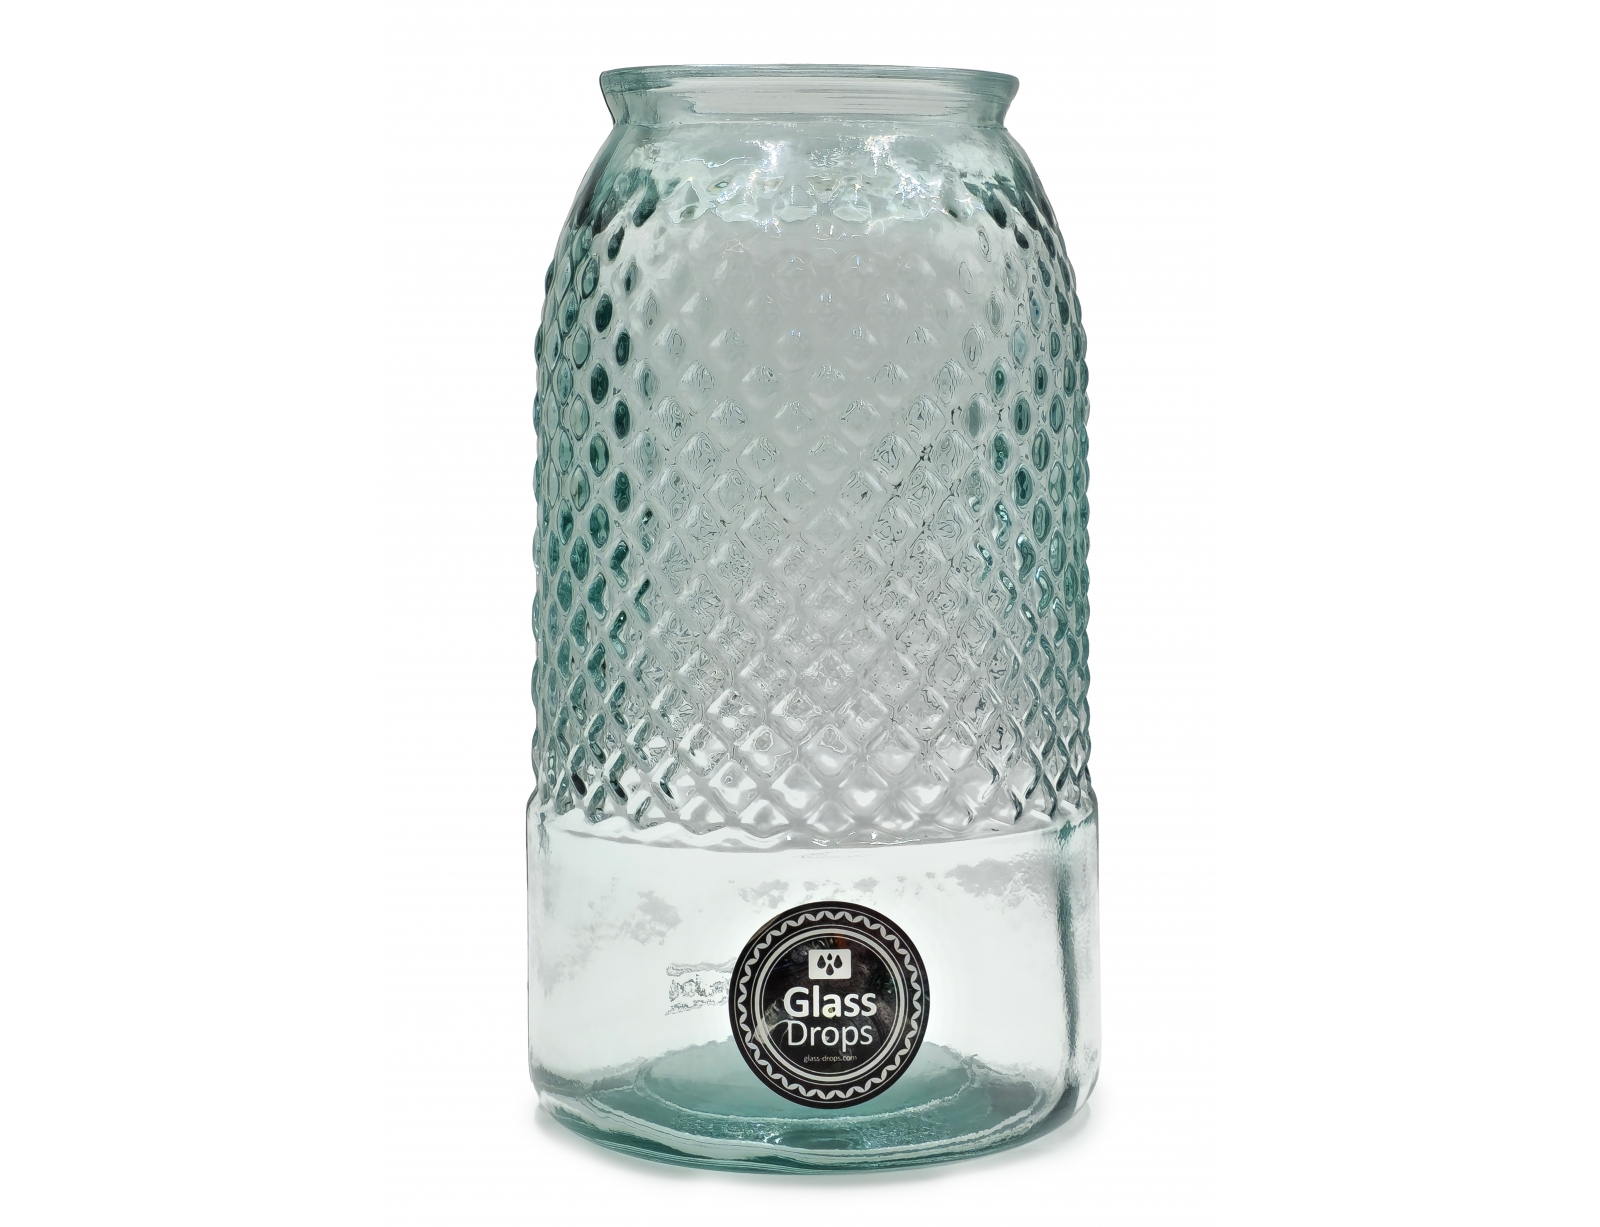 Εικόνα Διακοσμητικό Βάζο Glass Drops Diamante (5947)  Aπό 100% ανακυκλωμένο γυαλί, Xωρητικότητας 3.6L, Διαστάσεων Ø 15 x Υ 28 cm